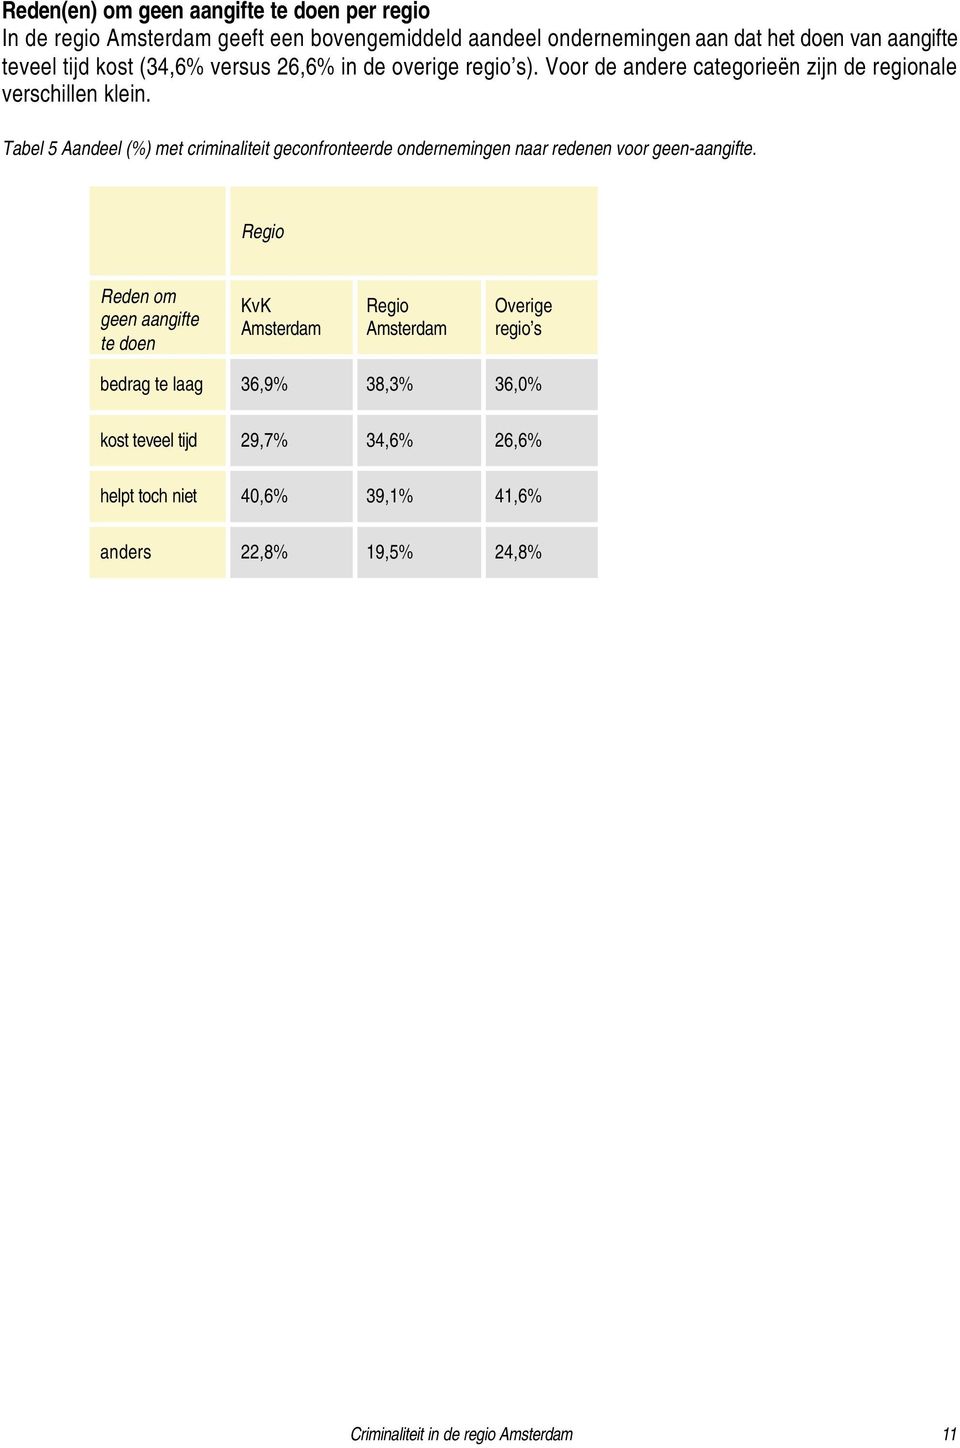 Tabel 5 Aandeel (%) met criminaliteit geconfronteerde ondernemingen naar redenen voor geen-aangifte.